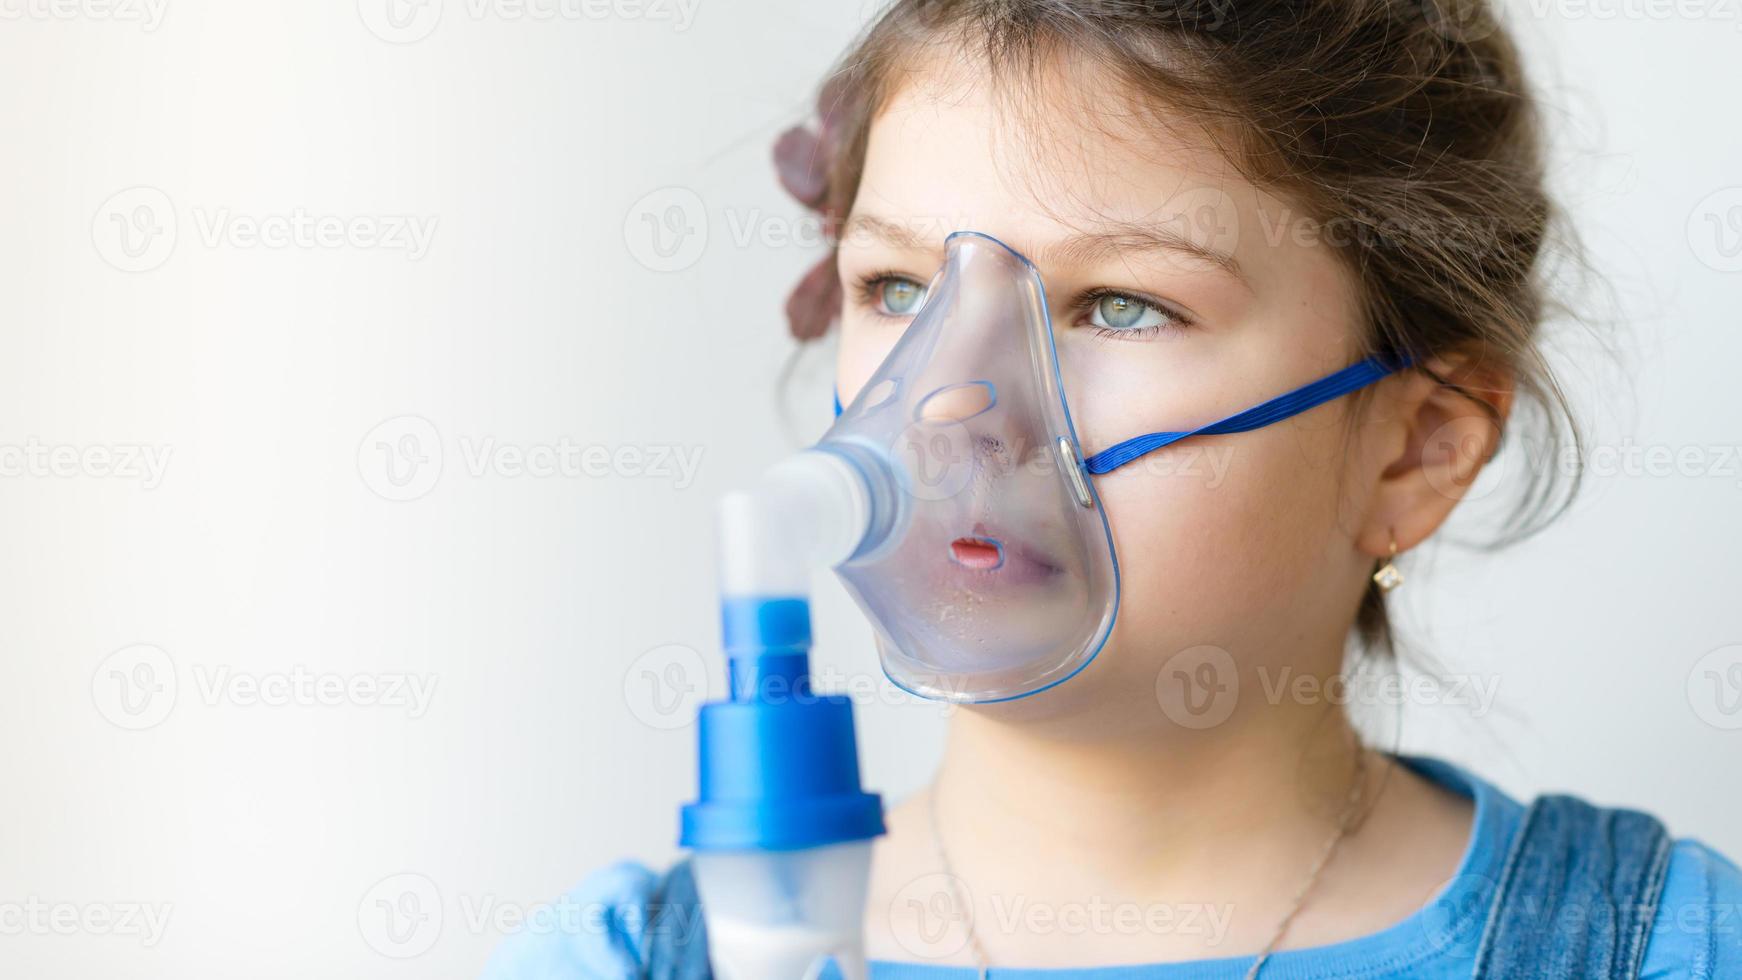 meisje met astma-inhalator foto